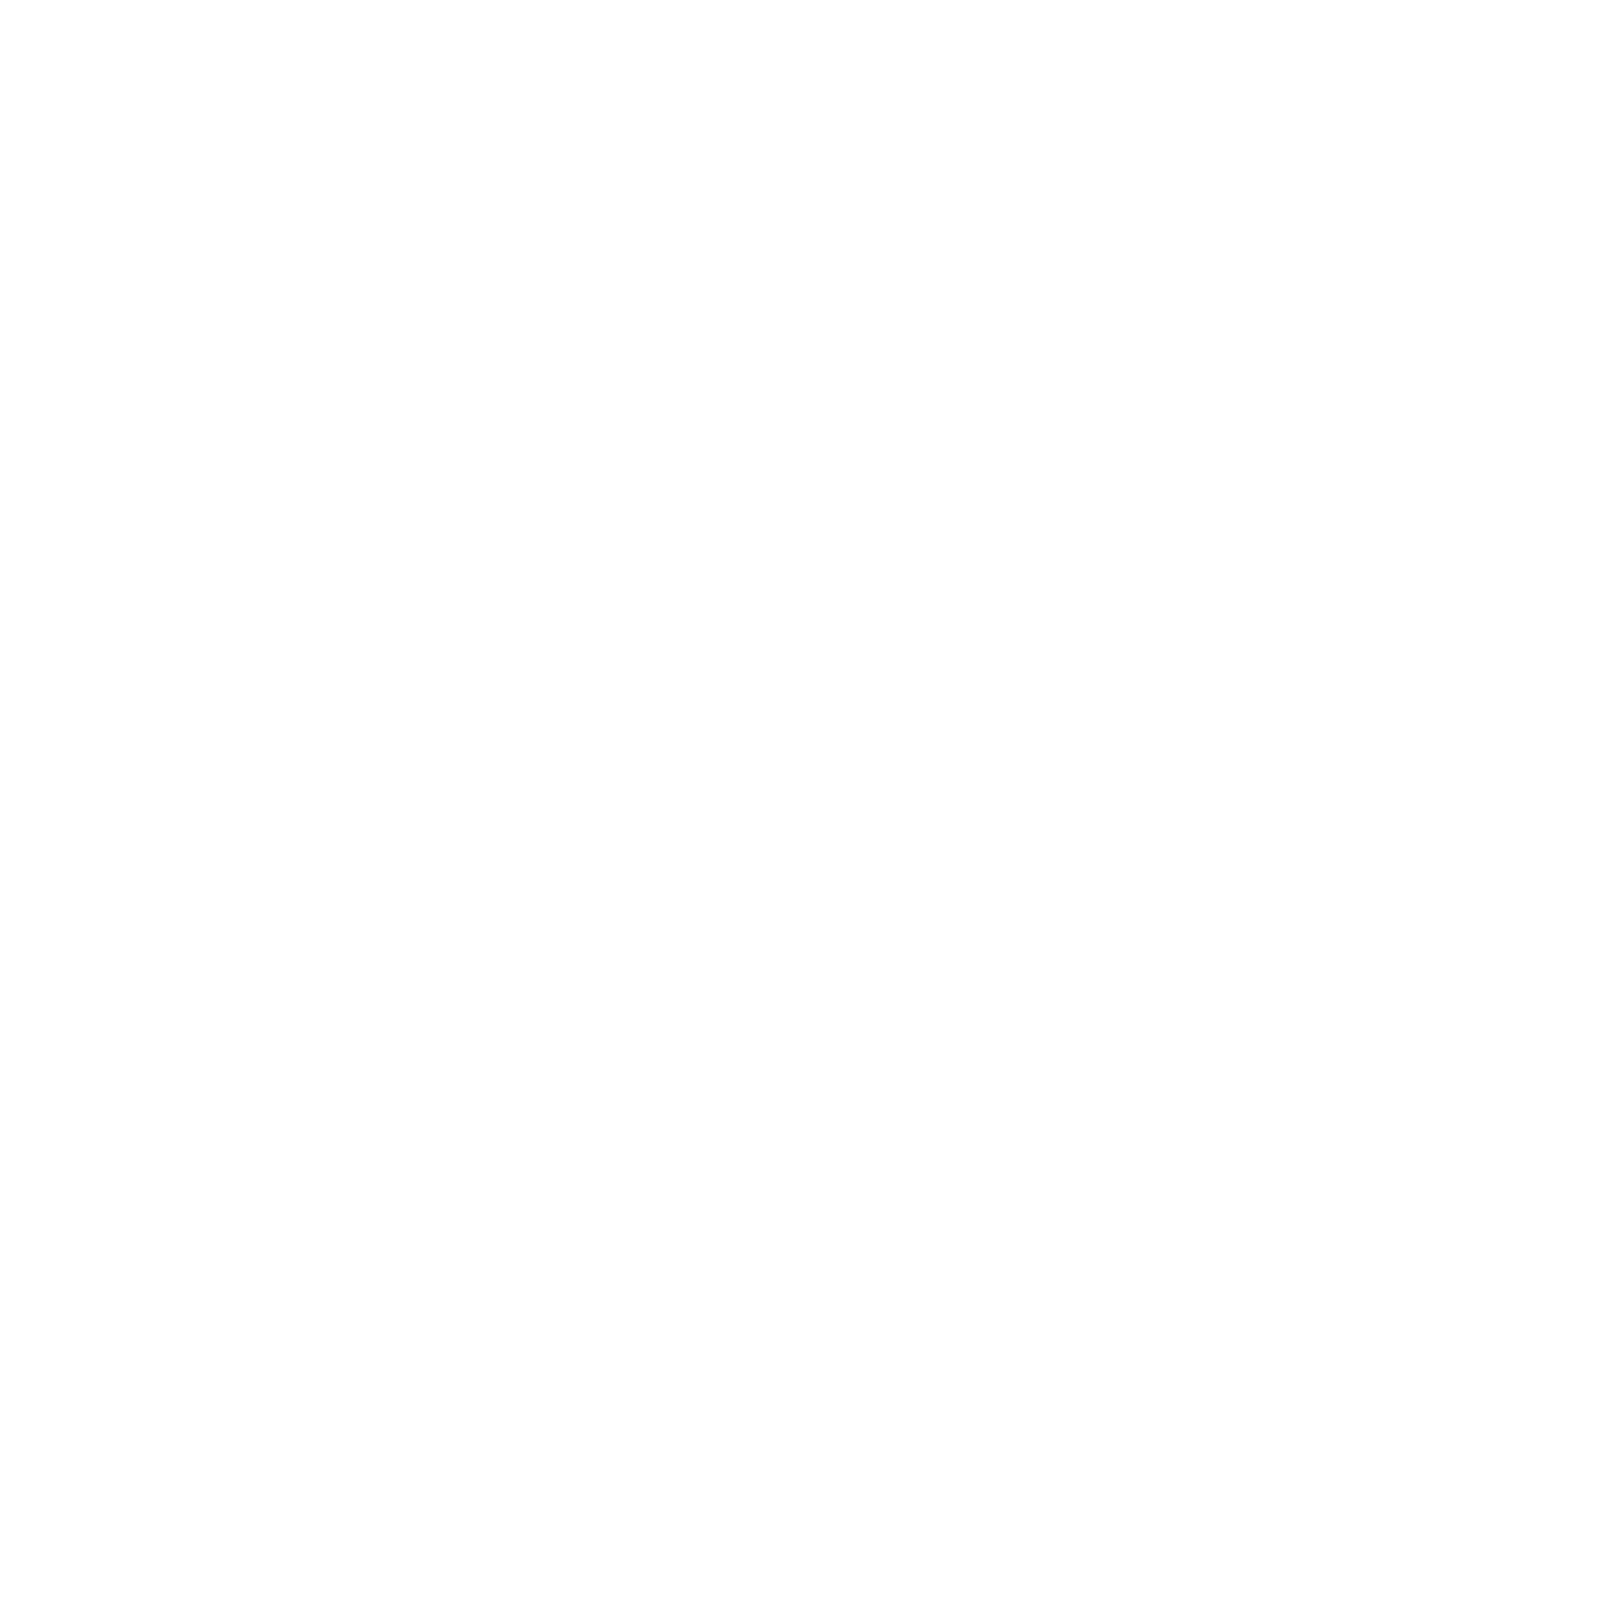 логотип для разработчика компьютерных игр